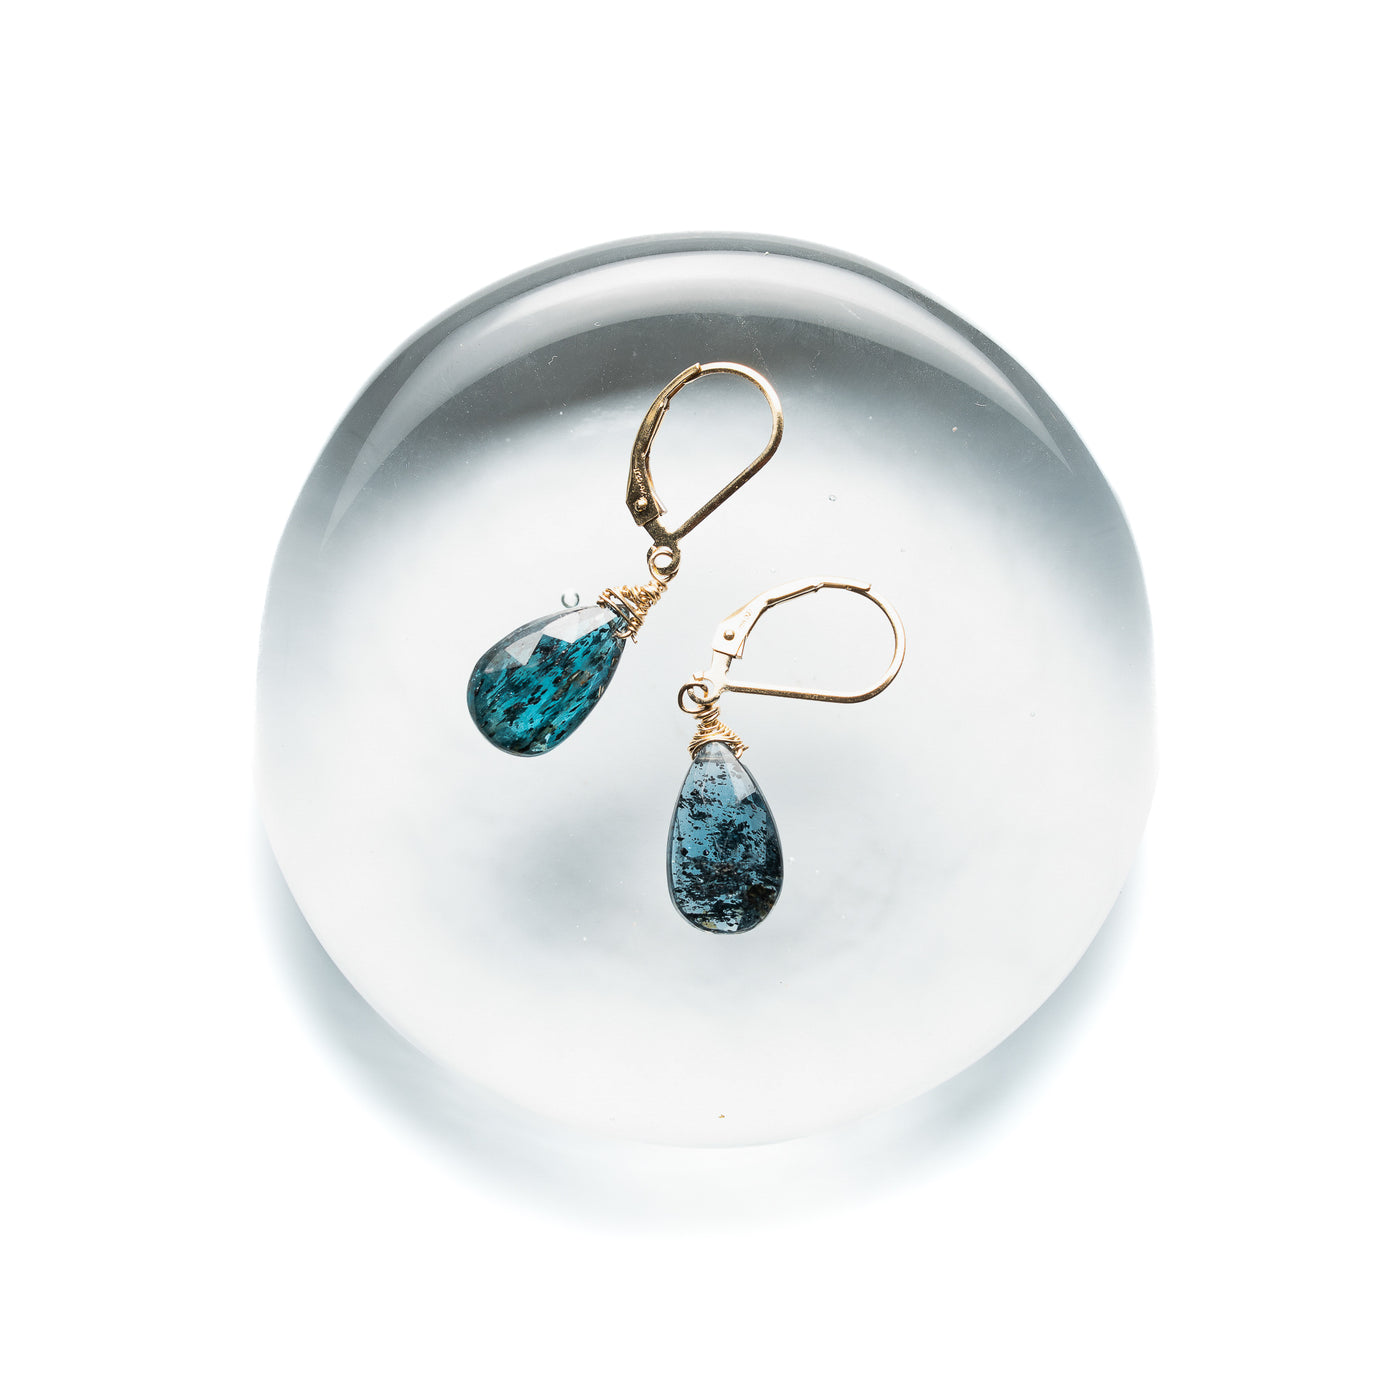 Delicate Wire Wrapped Ocean Blue Kyanite Earrings